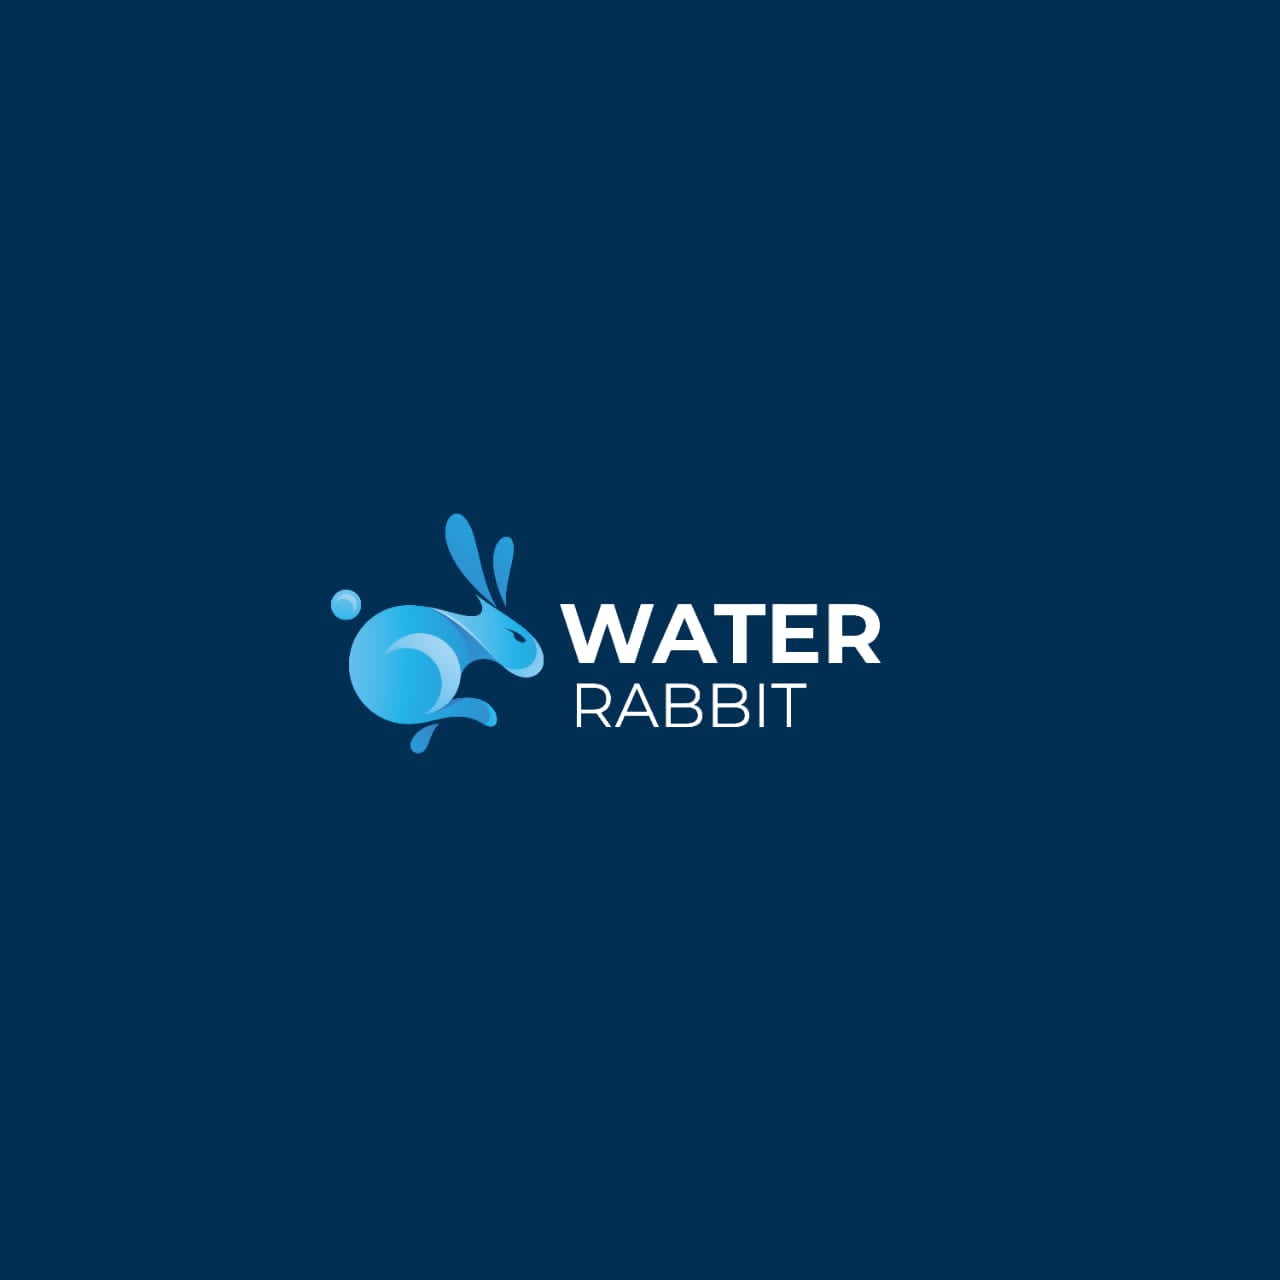 WATER RABBIT Audit Report